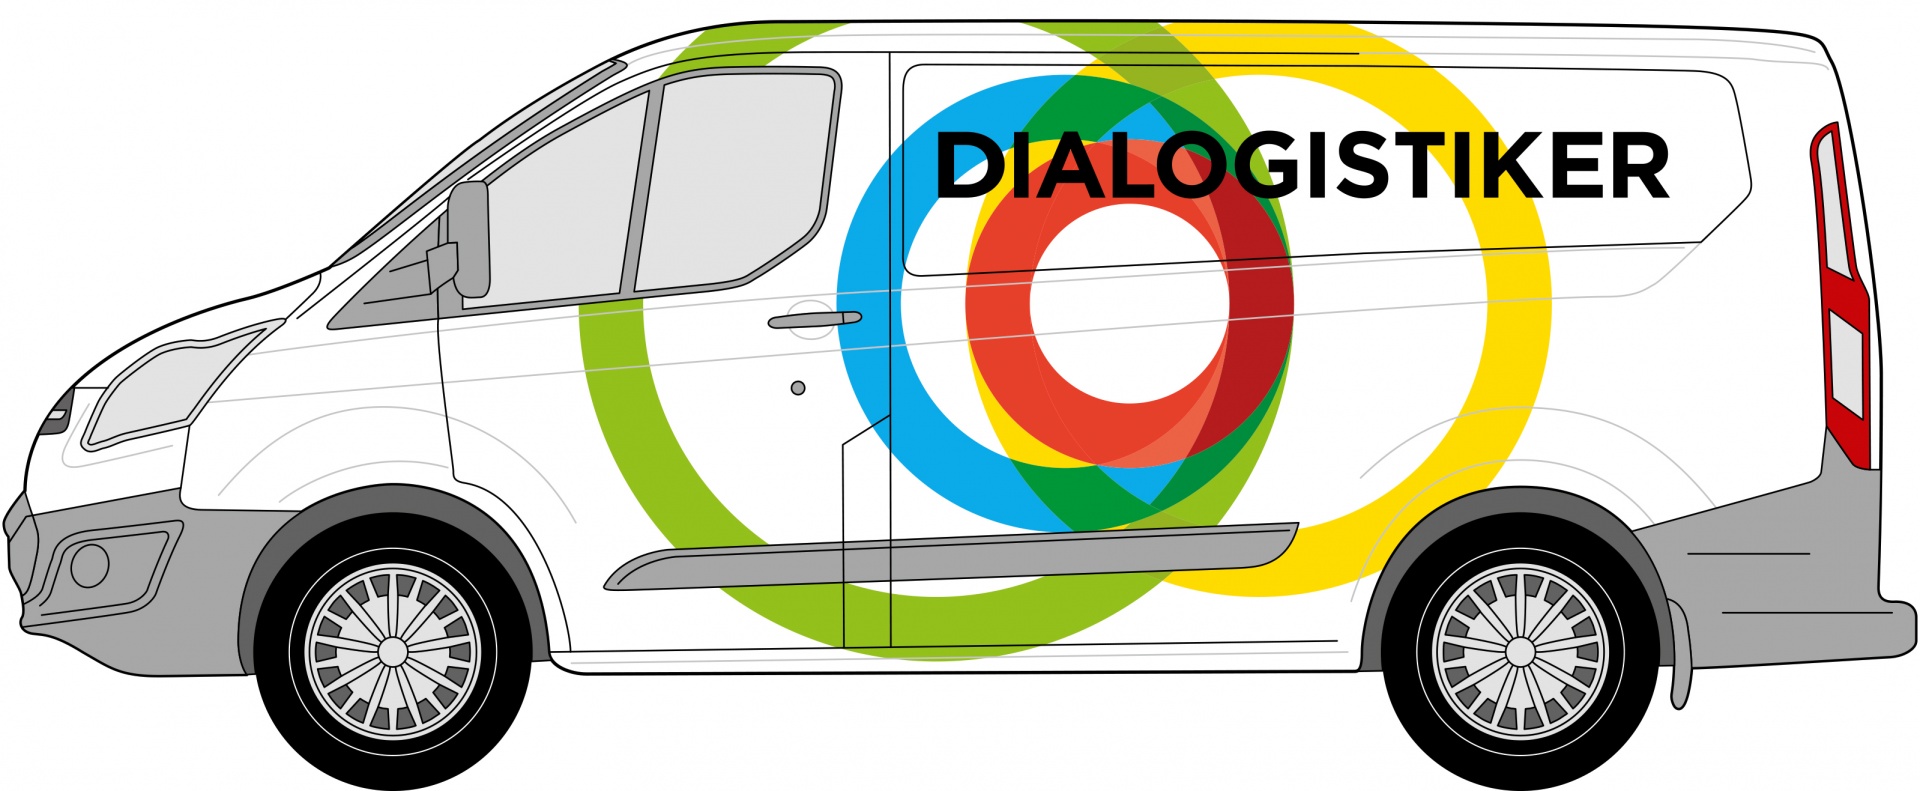 Branding Dialogistiker Transporterbeschriftung